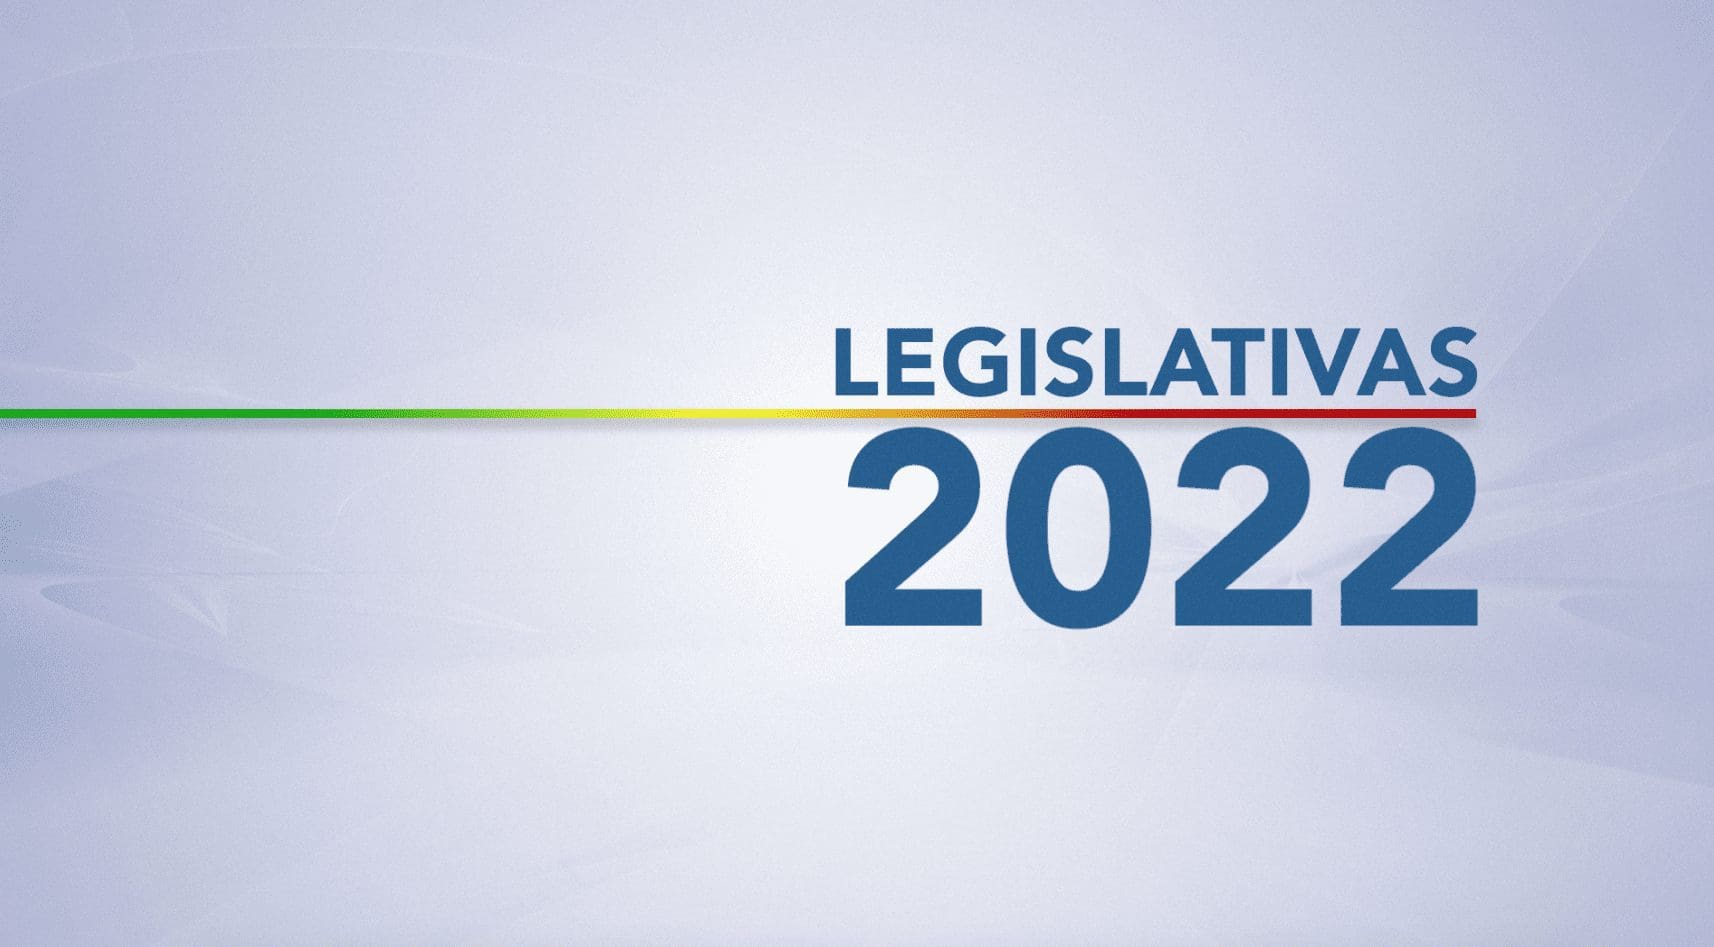 Acompanhe as legislativas 2022 no ‘Fala Portugal’